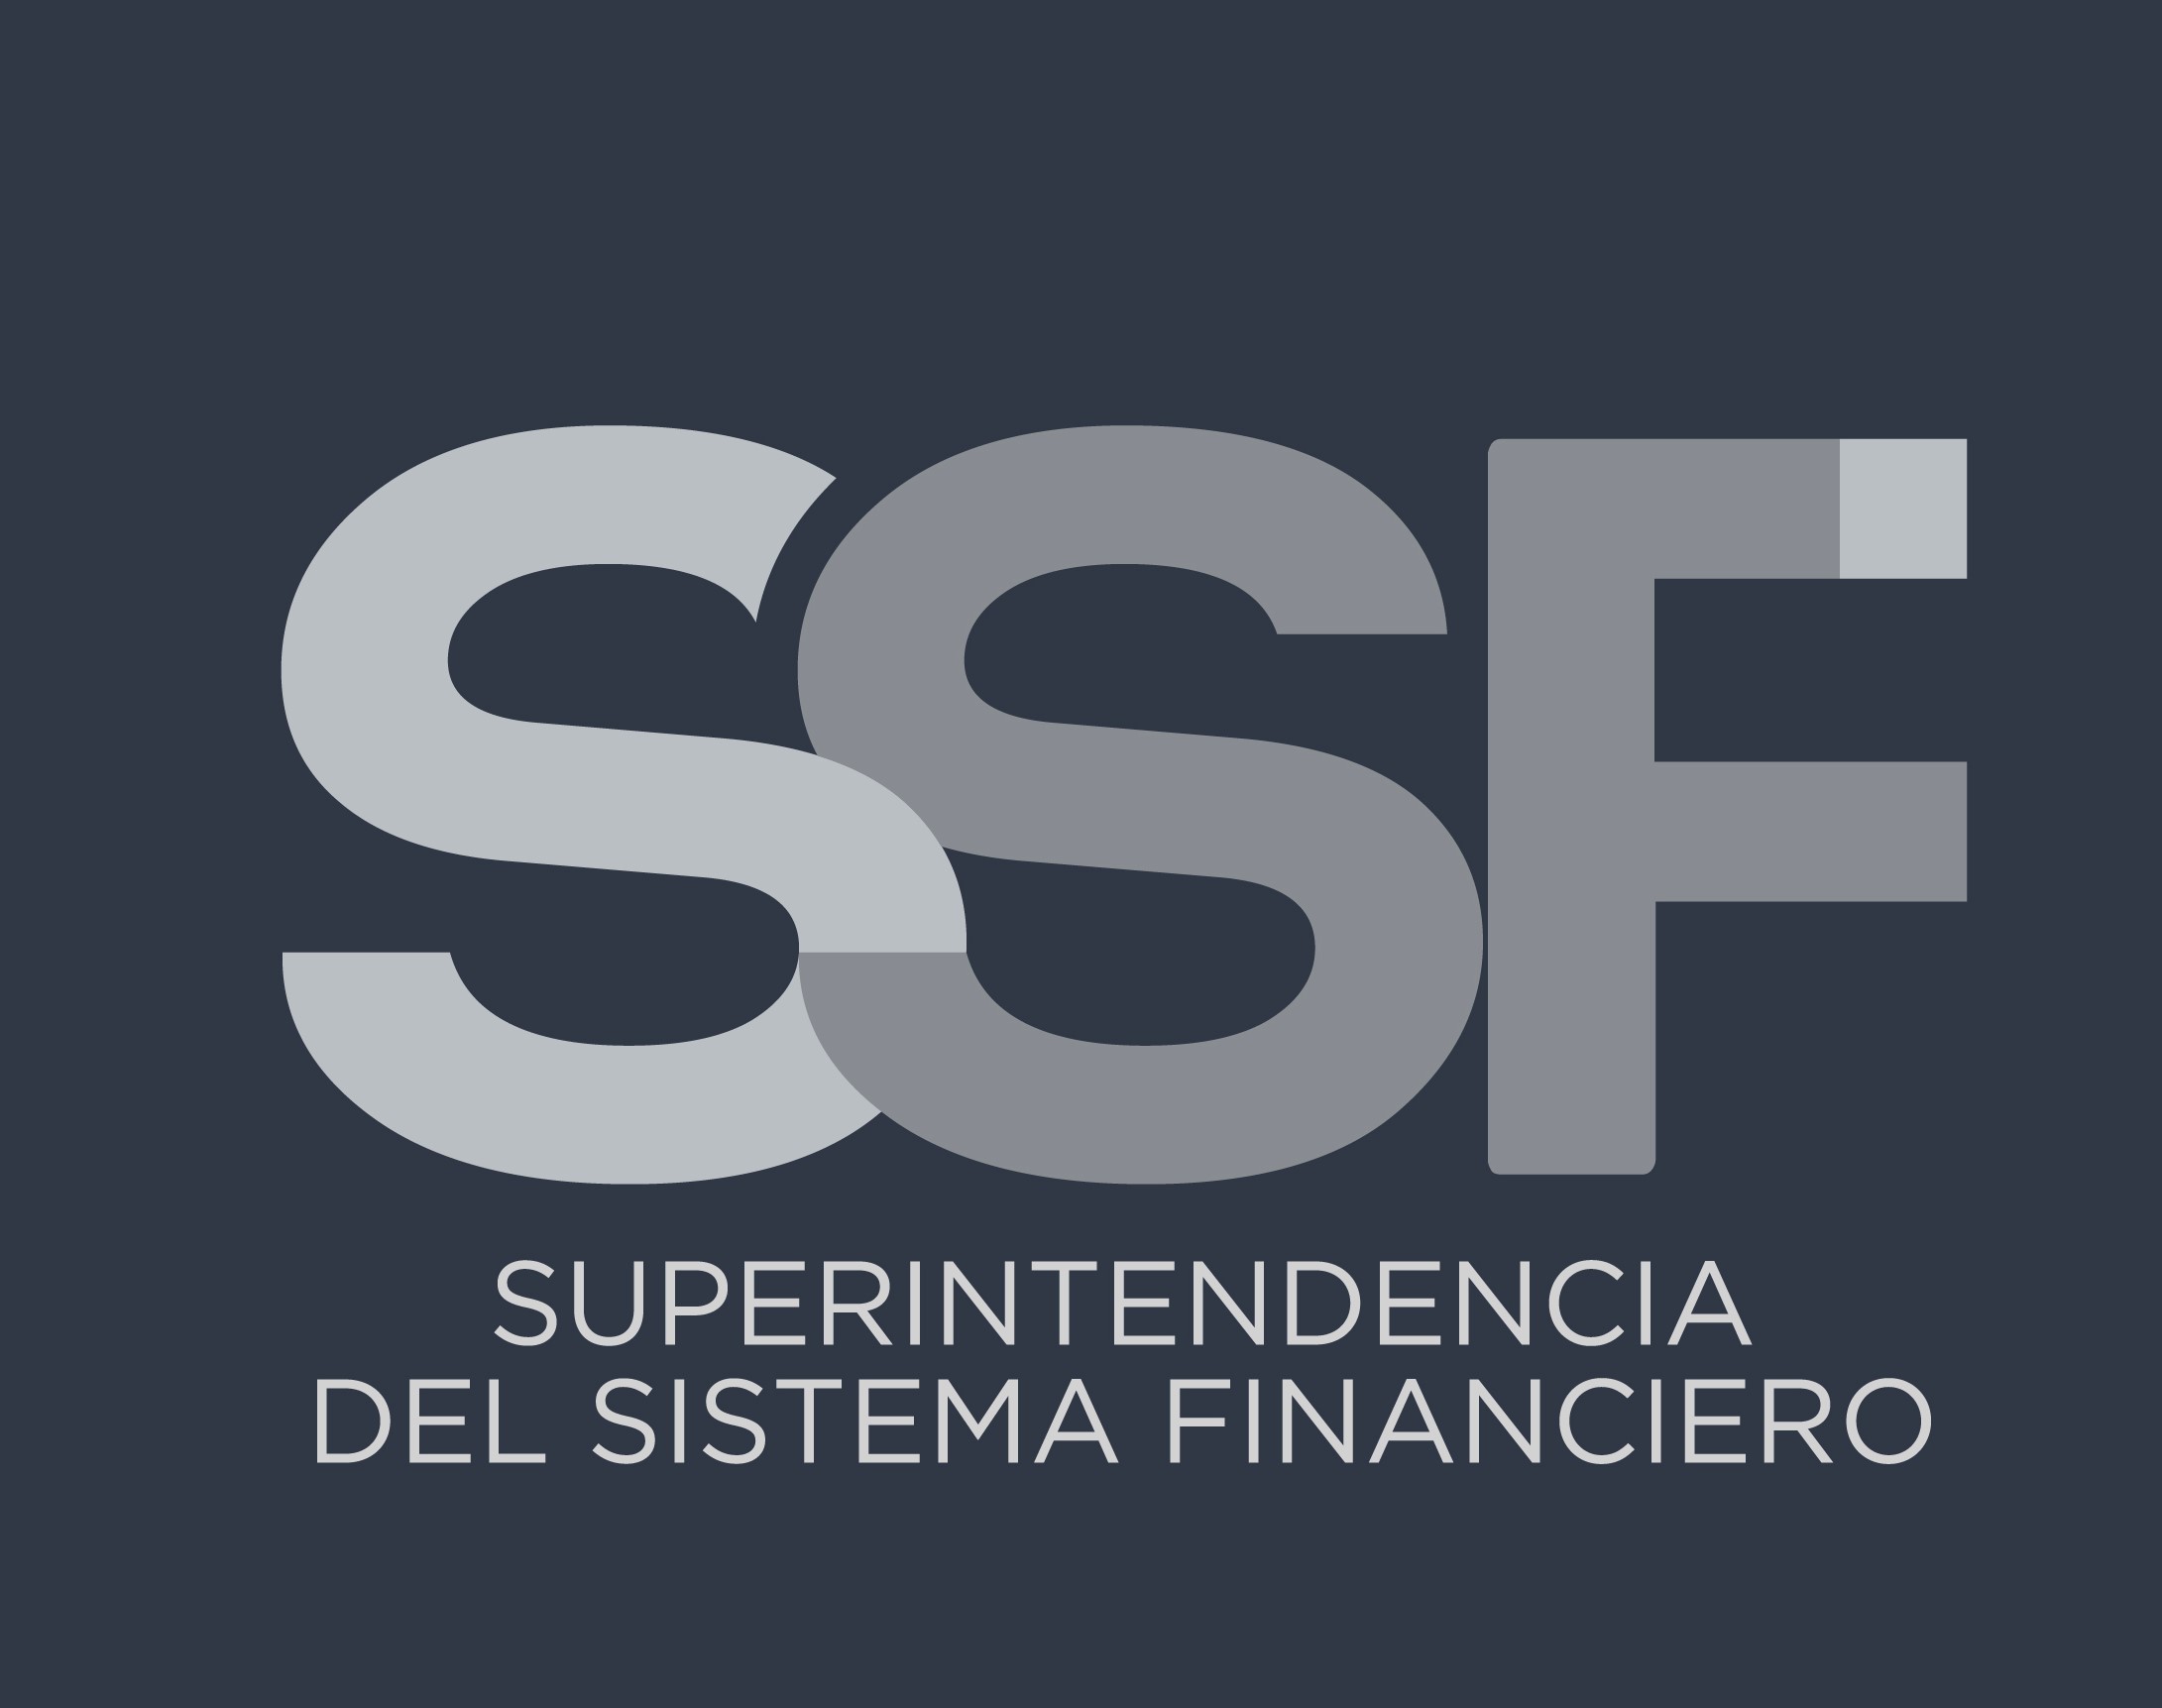 Bancos Superintendencia Del Sistema Financiero 2588